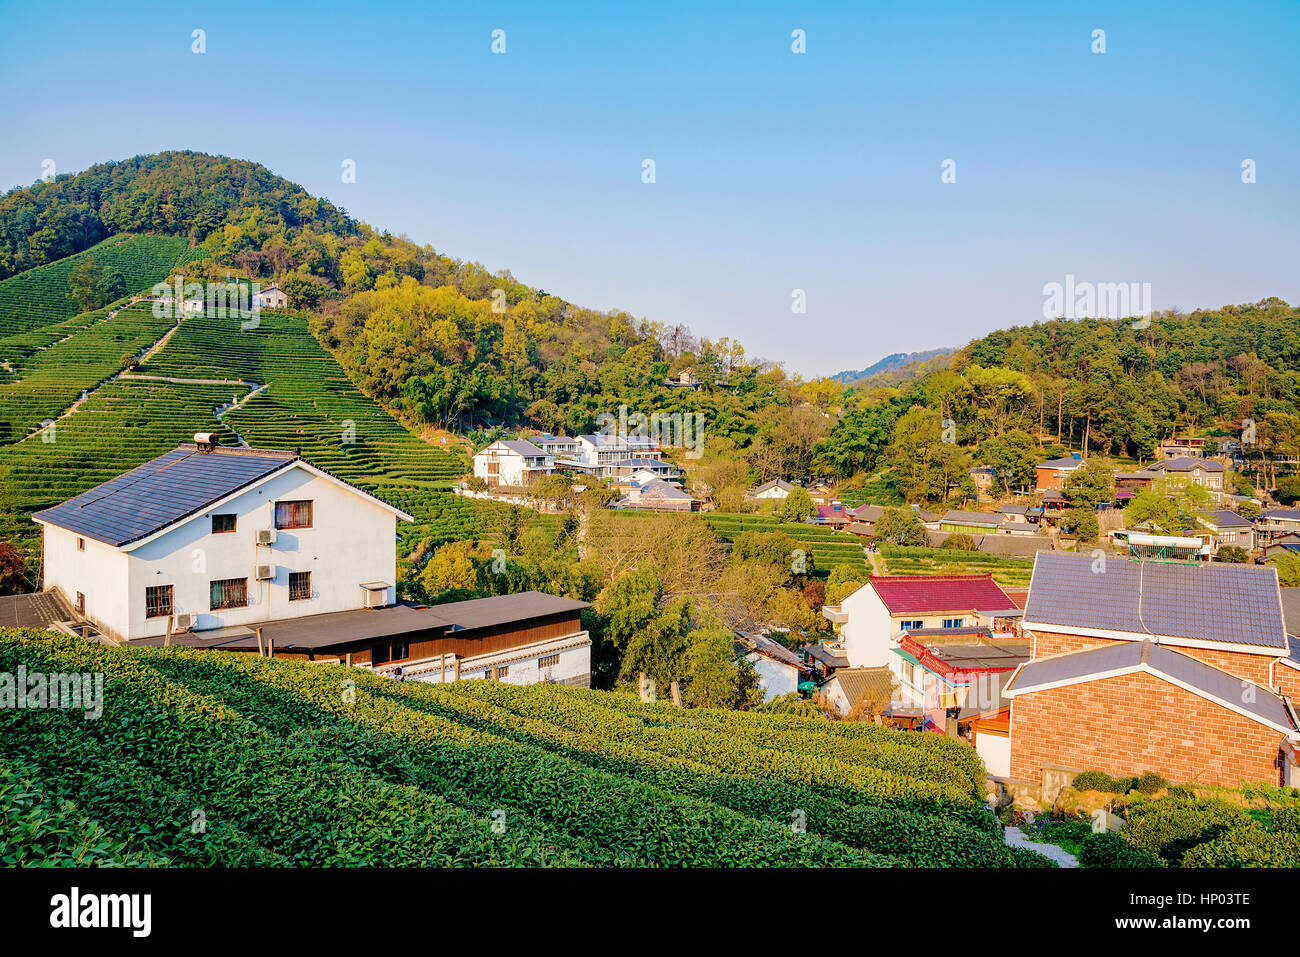 C'est thé Longjing village l'un des plus célèbres plantations de thé en Chine qui produit le thé vert Longjing Banque D'Images